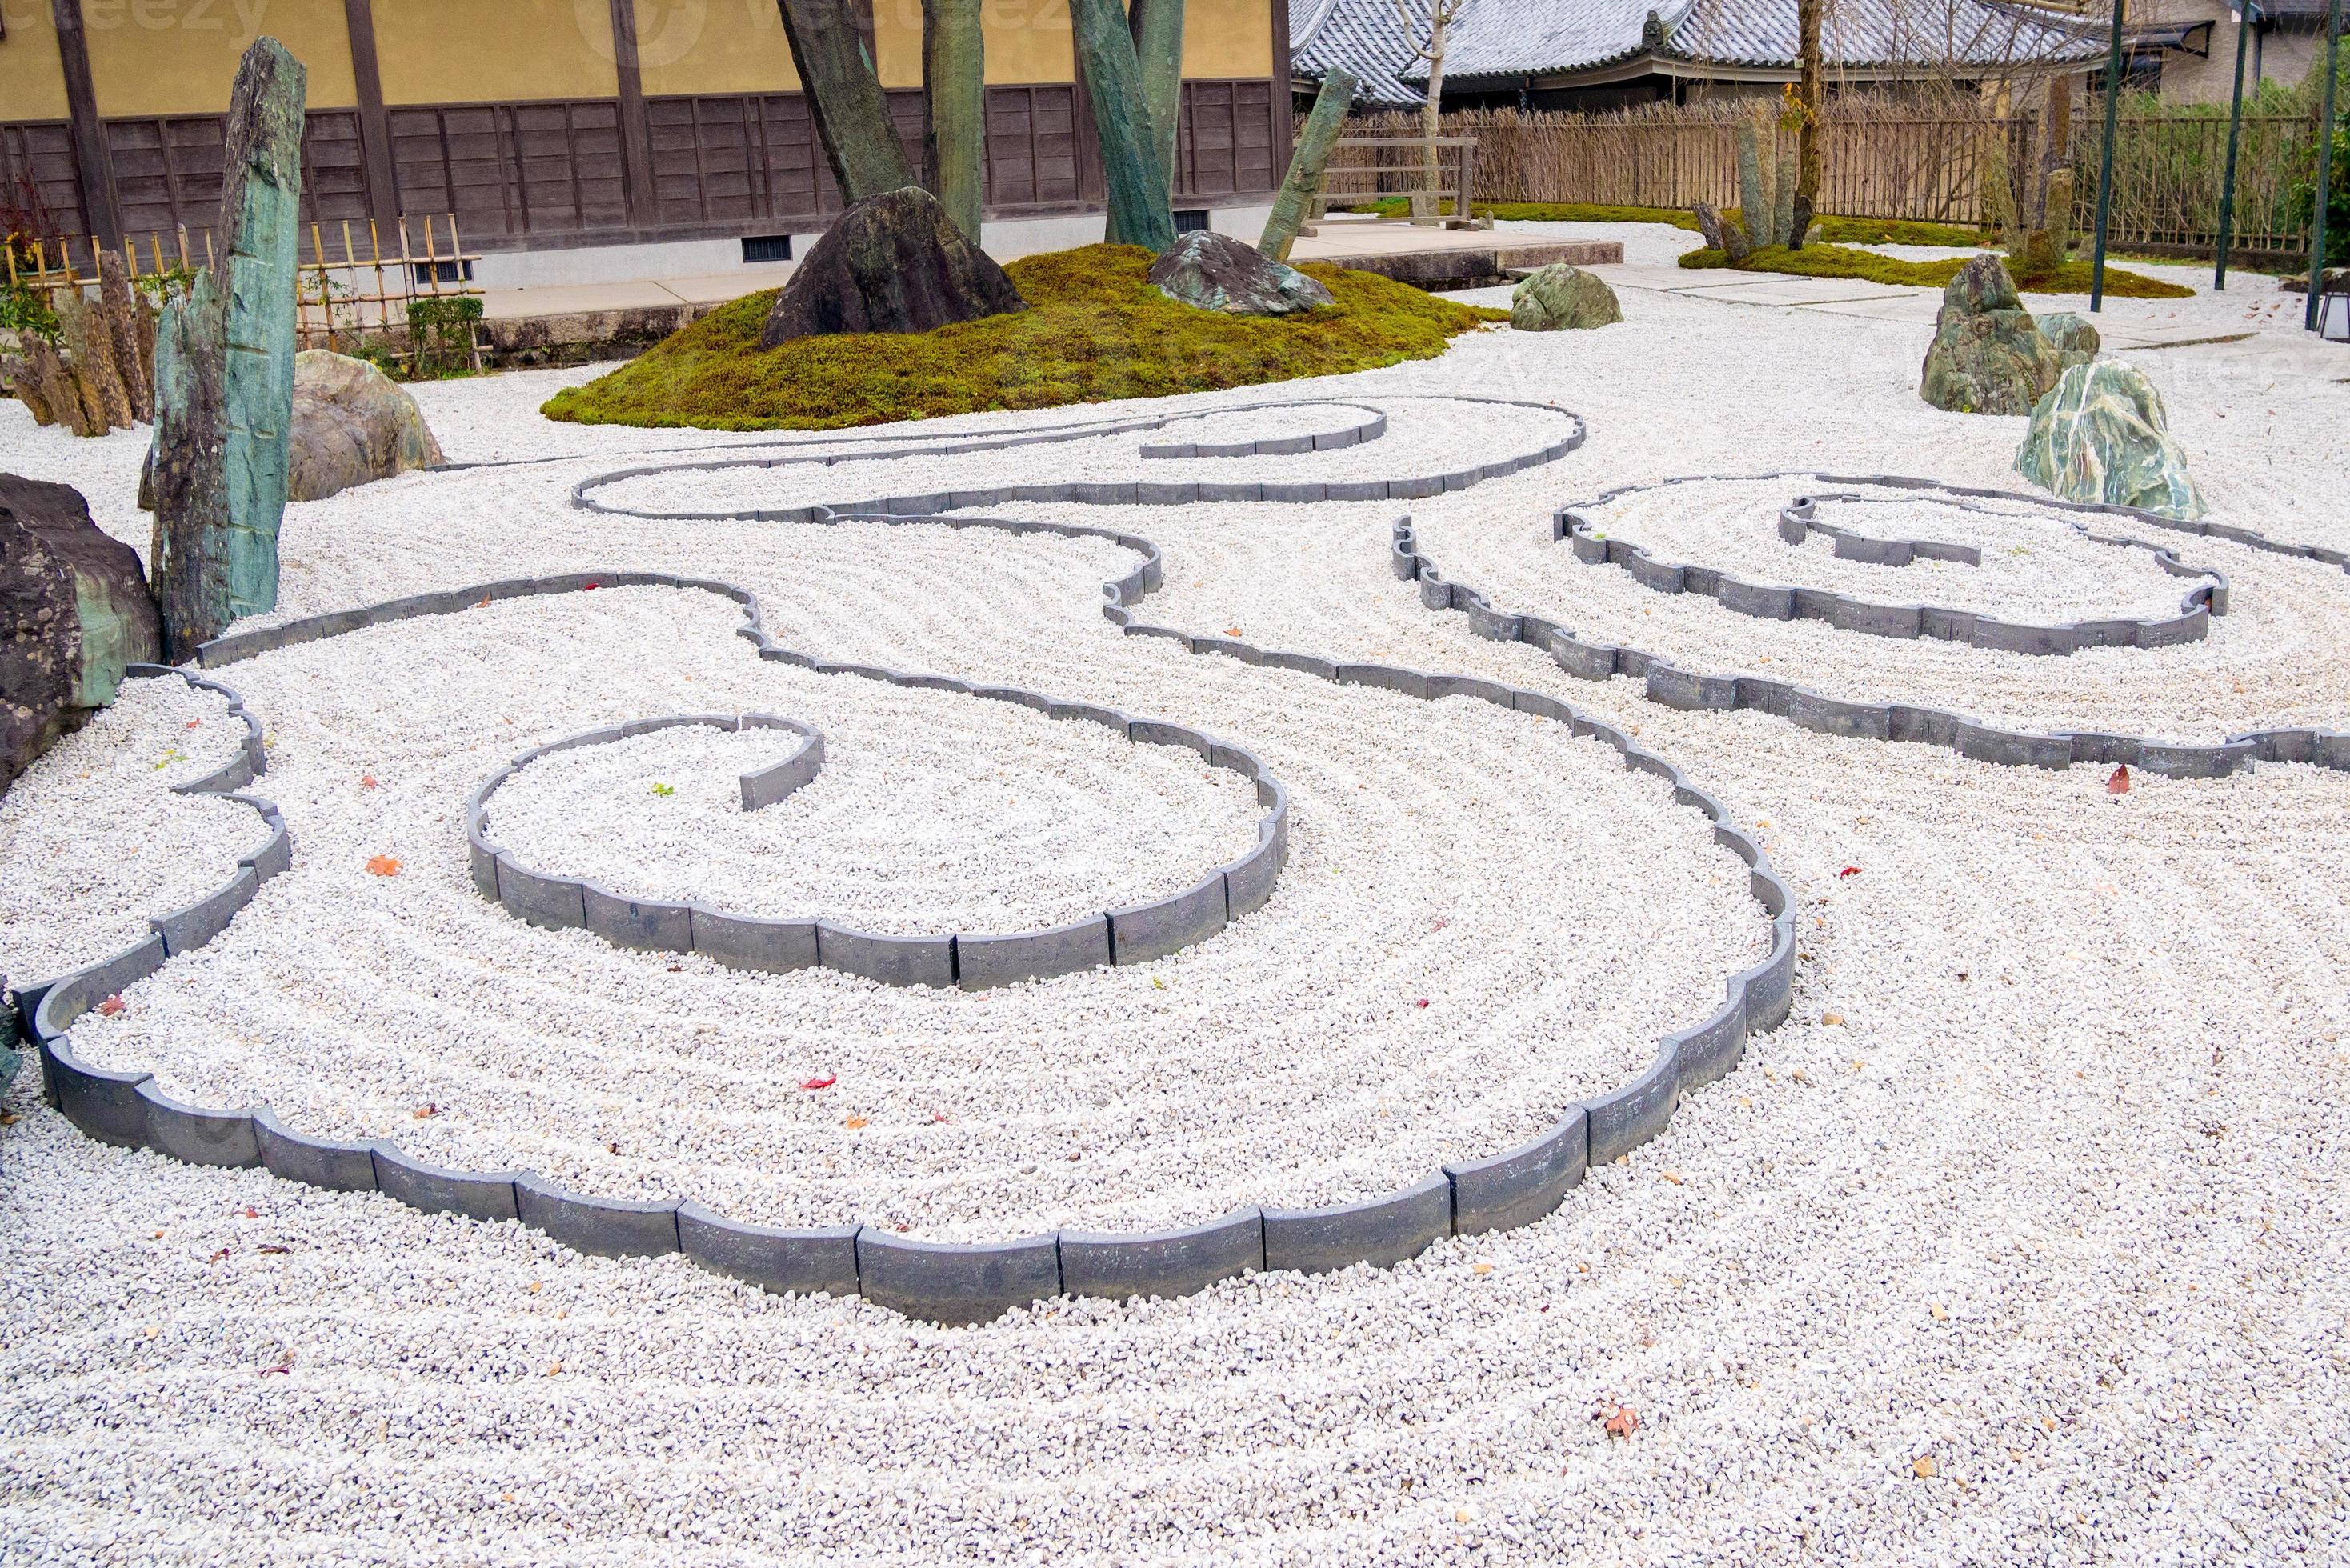 Jardín zen japonés armonía de rocas arena rastrillada y follaje arreglado